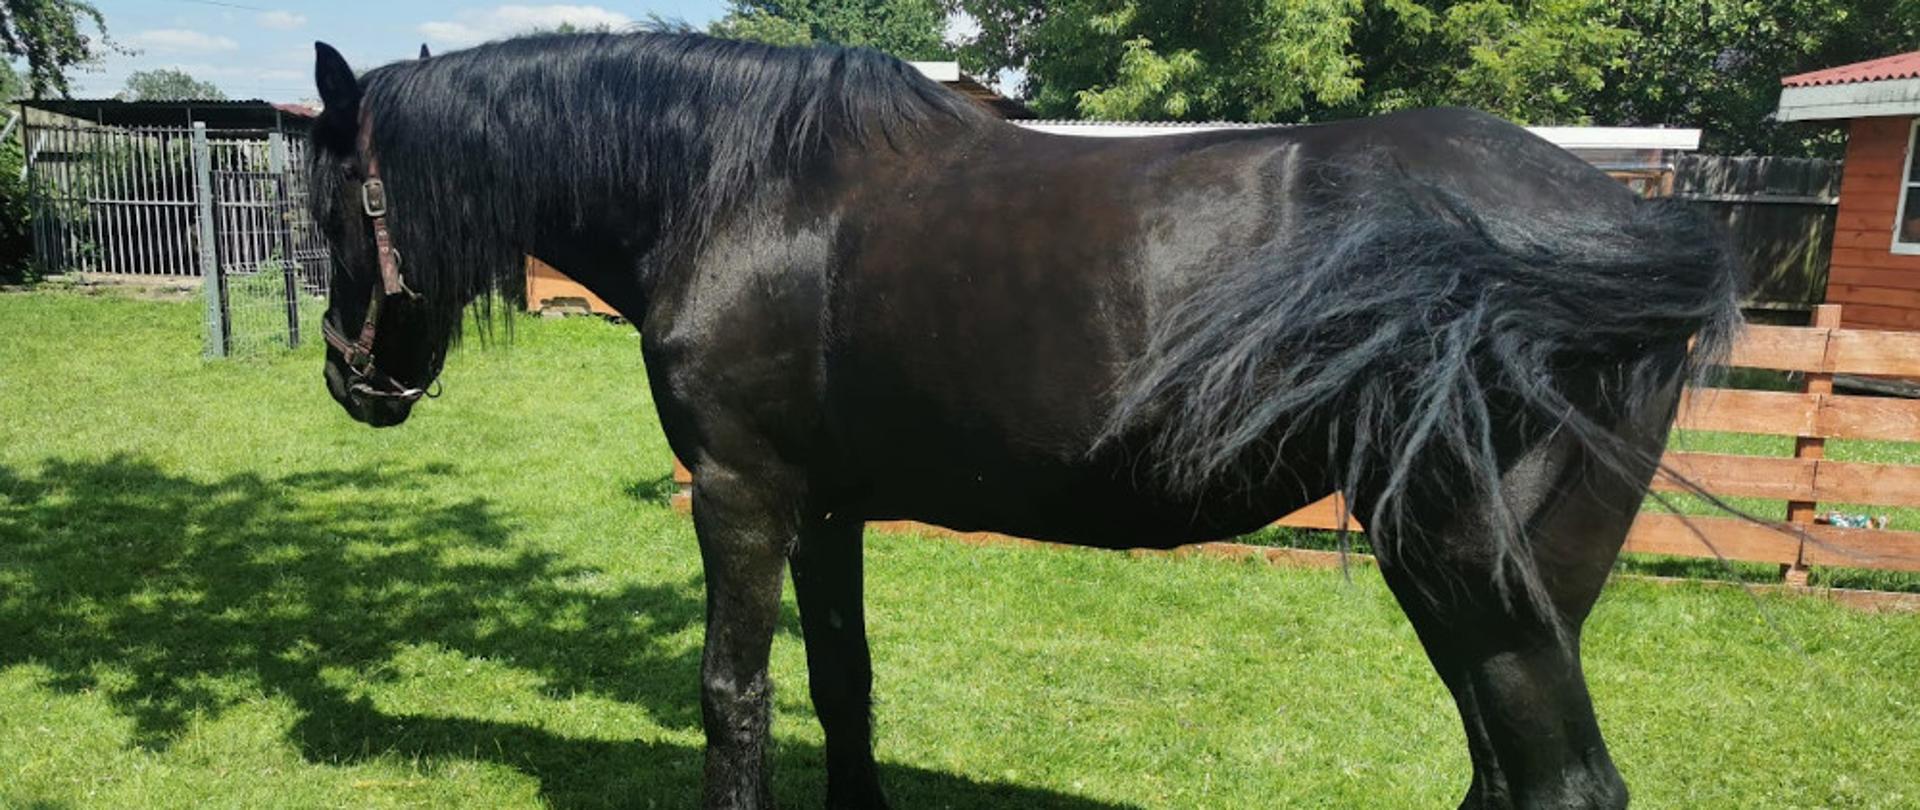 Ewakuacja konia z oczka wodnego - koń koloru czarnego stoi na trawie cały i zdrowy.